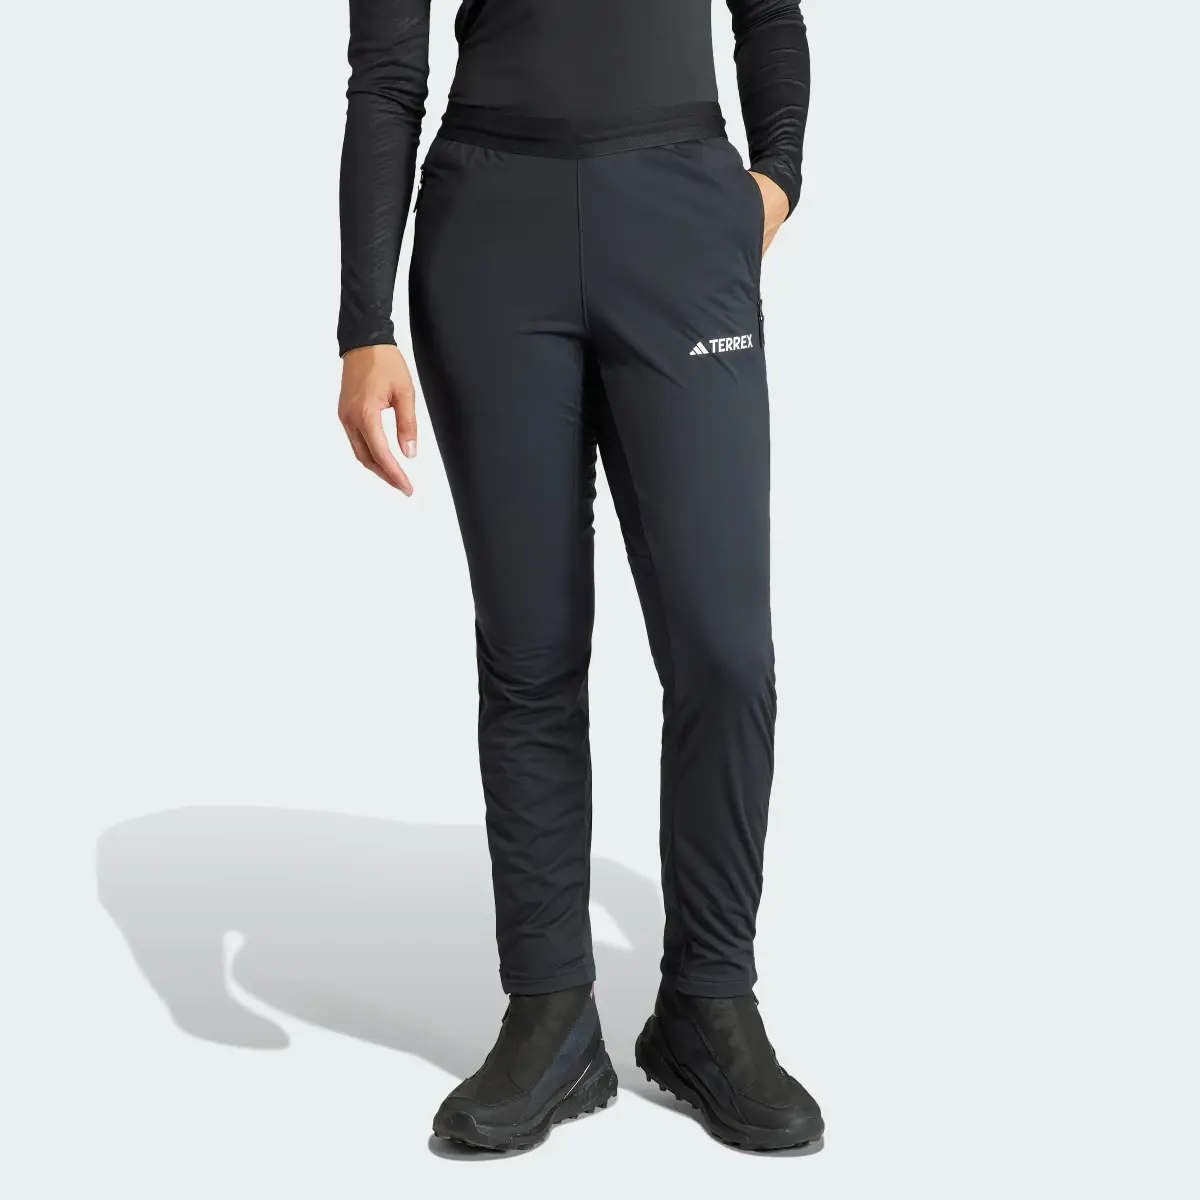 Adidas Pantalón Terrex Xperior Cross Country Ski Soft Shell. 1